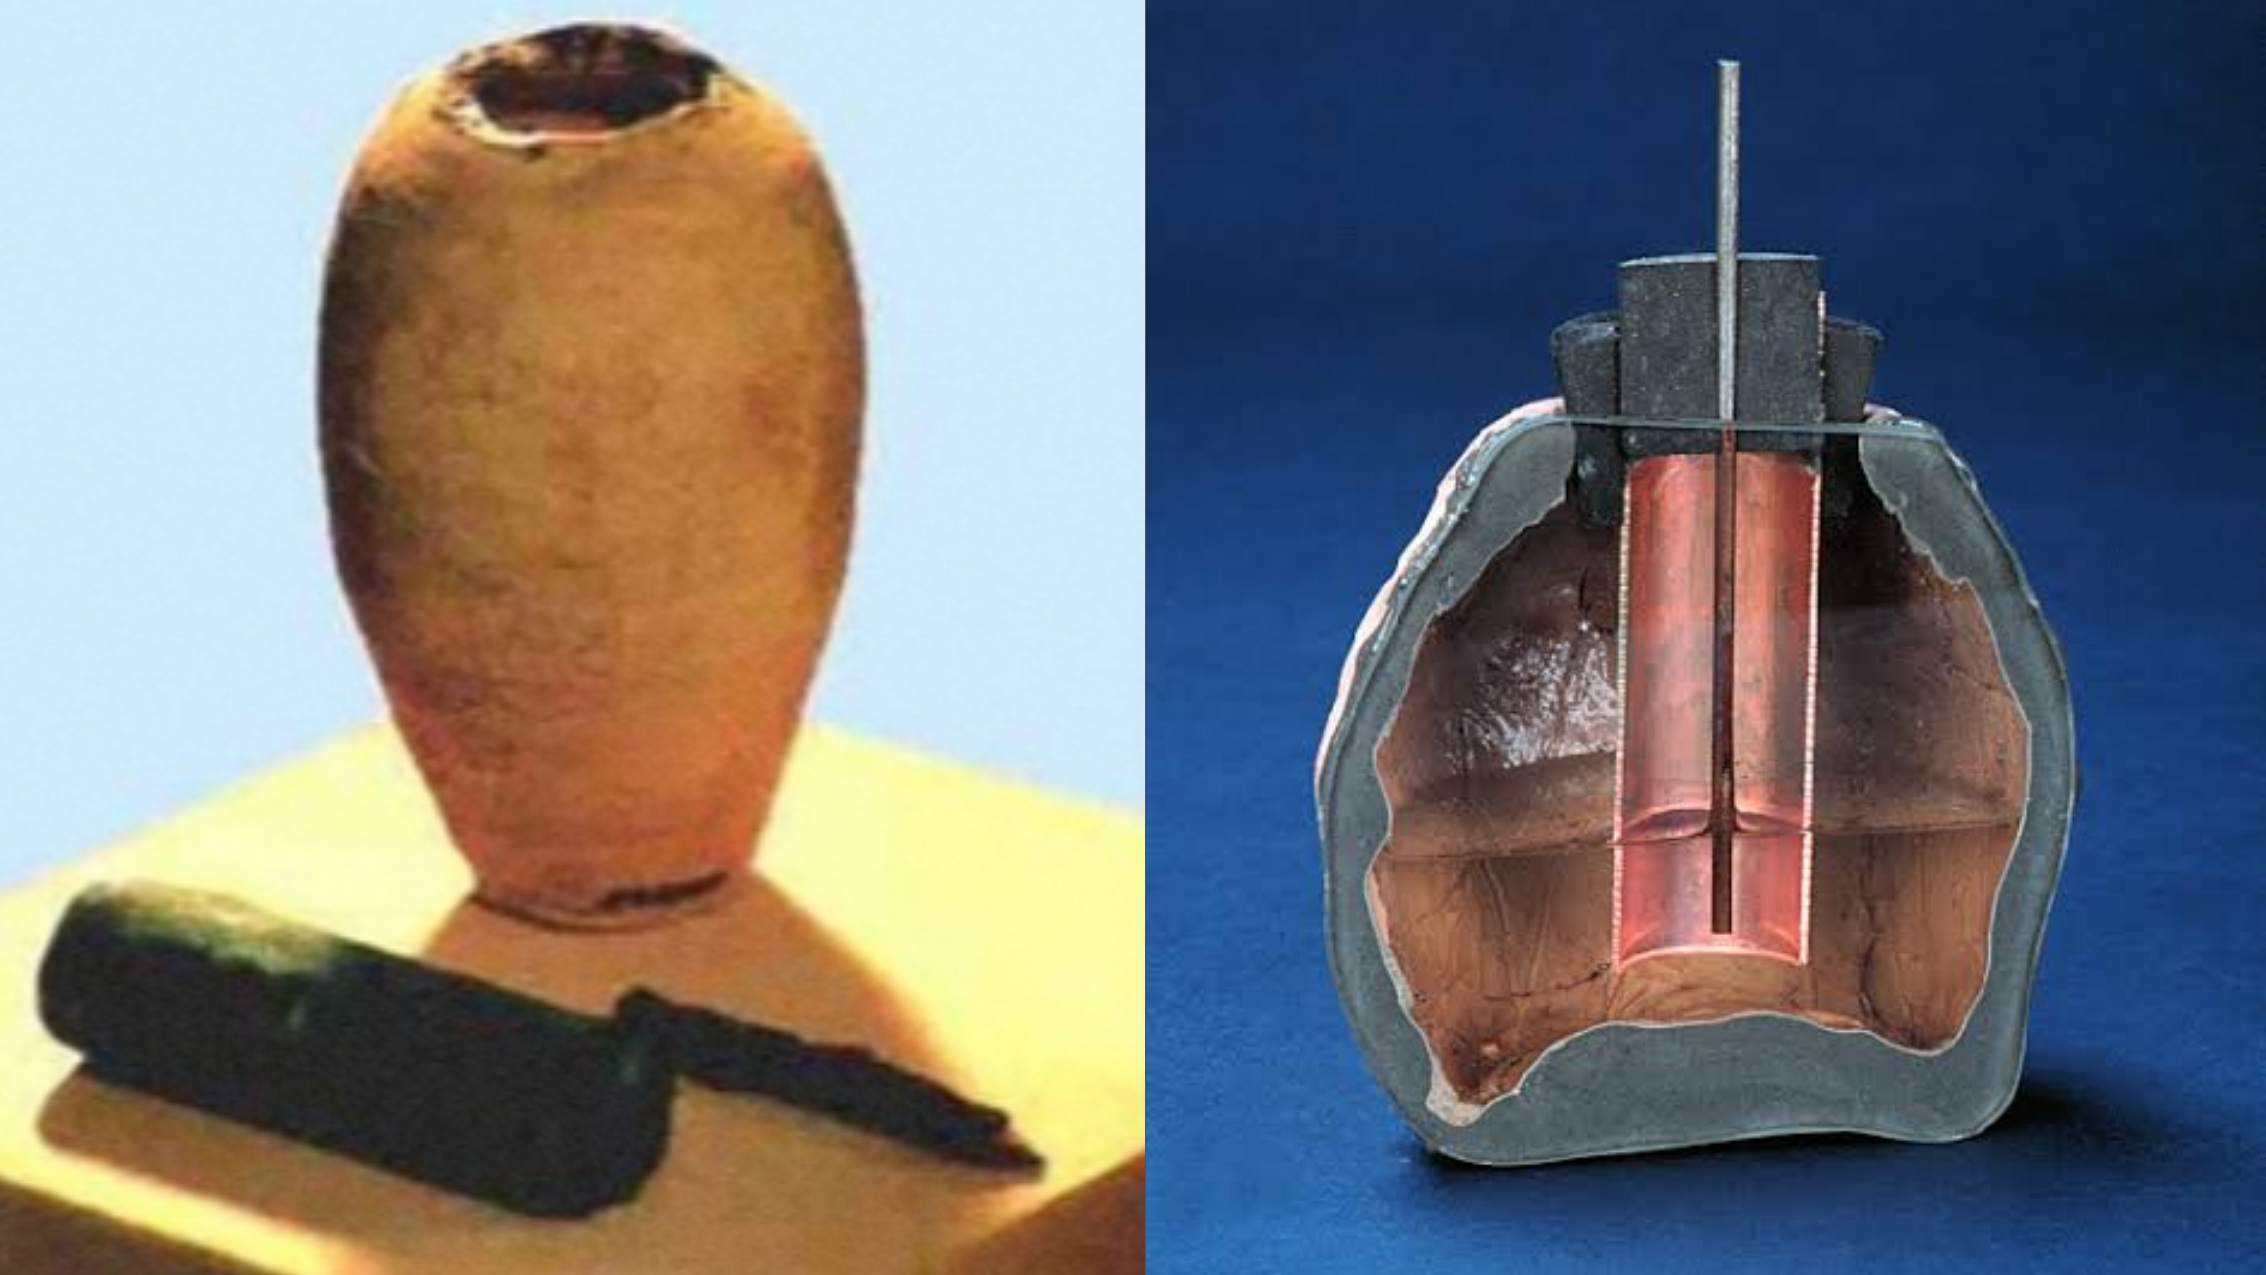 Coso artefakt: 500,000 1 let stará zapalovací svíčka? XNUMX